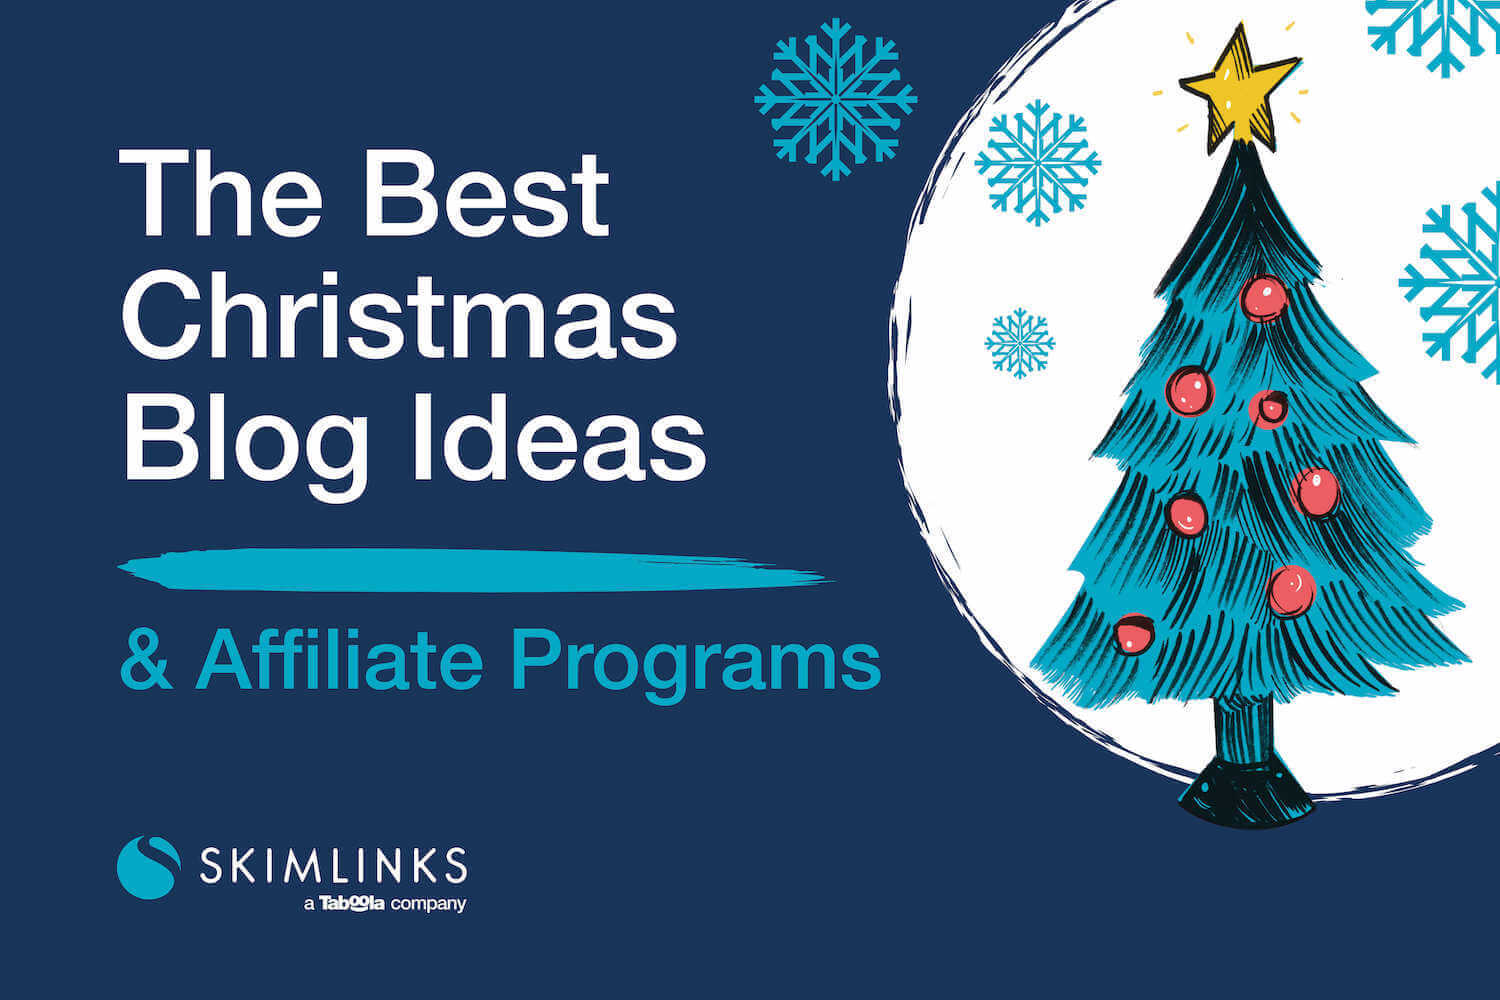 https://skimlinks.com/wp-content/uploads/2021/11/Christmas-Blog-Ideas-1.jpg